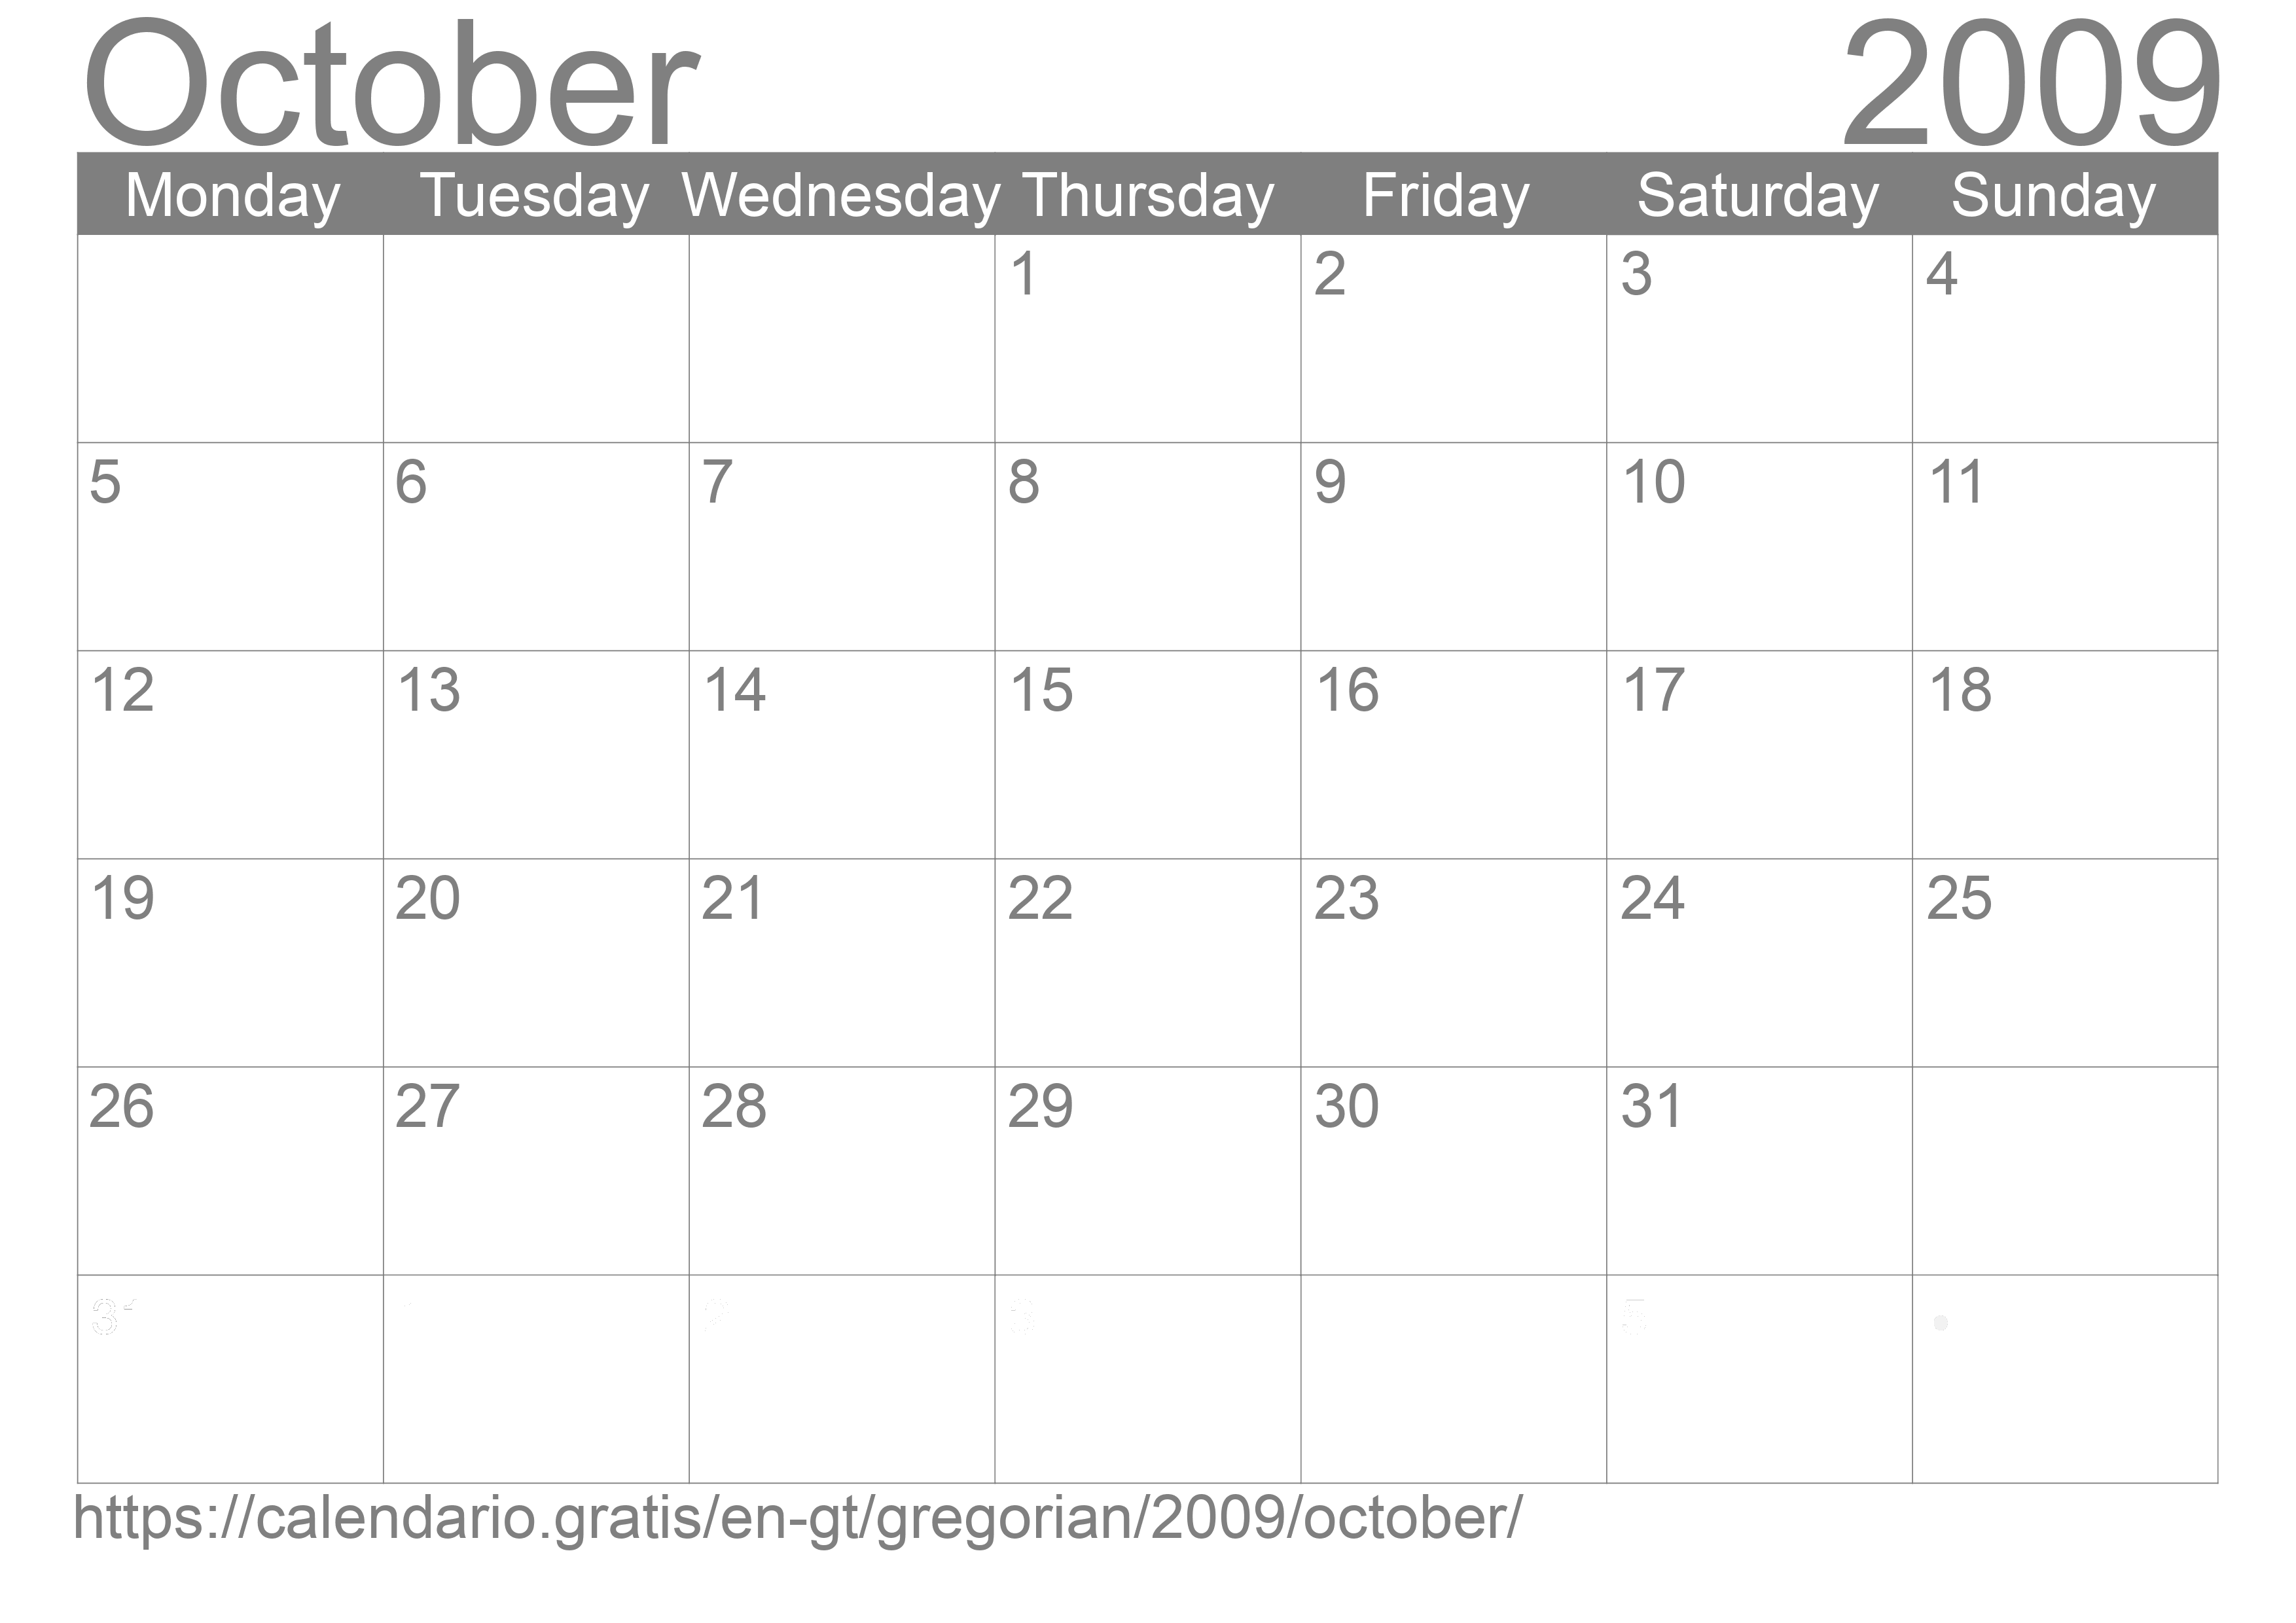 Calendar October 2009 to print